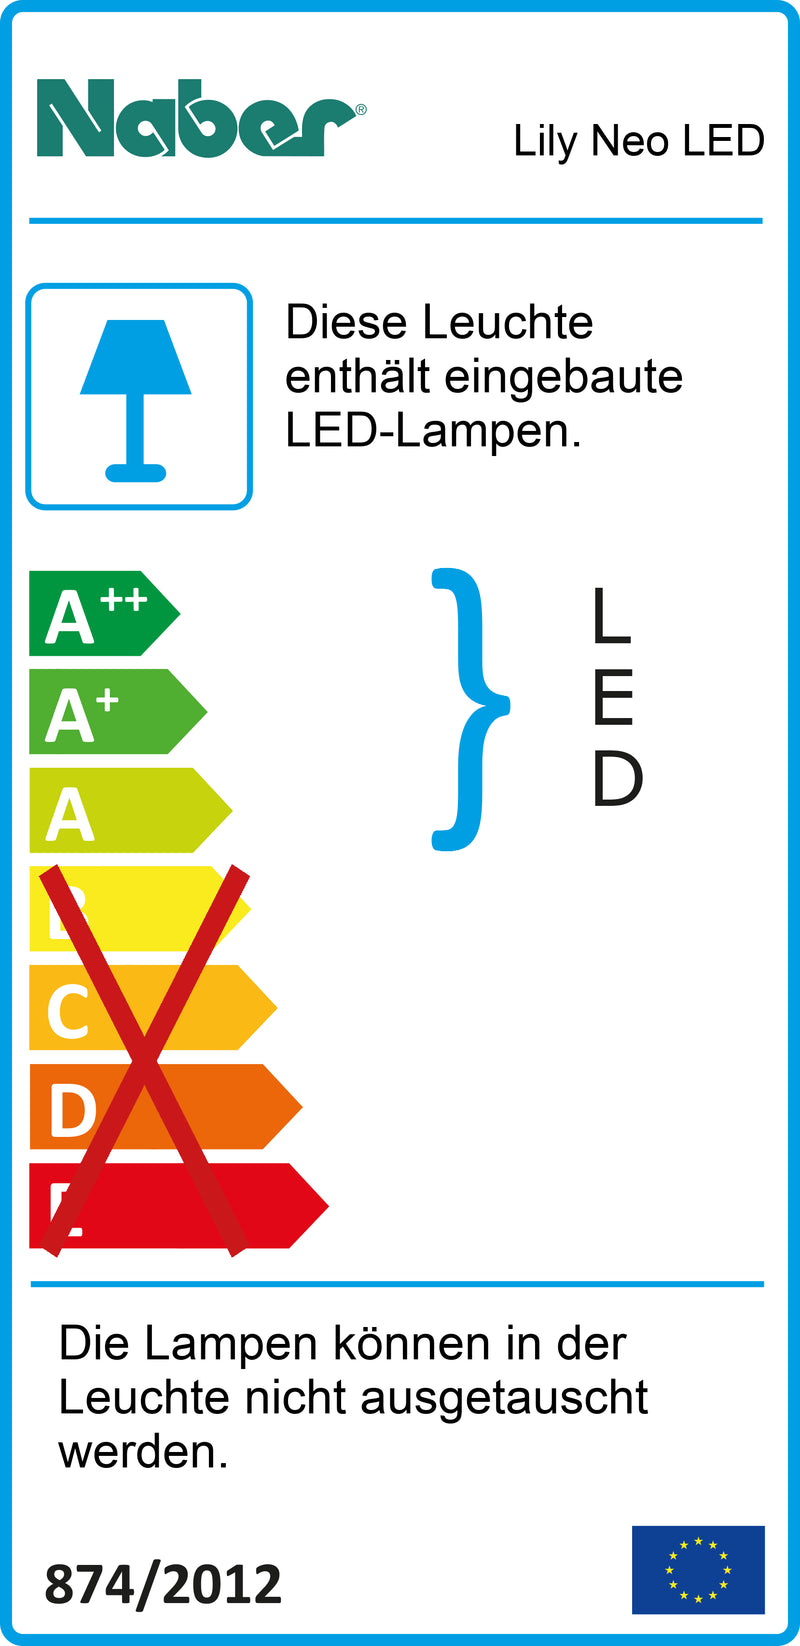 E-Label zu Zeichnung zu Lily Neo LED als Variante L 1200 mm, 21 W, edelstahlfarbig von Naber GmbH in der Kategorie Lichttechnik in Österreich auf conceptshop.at